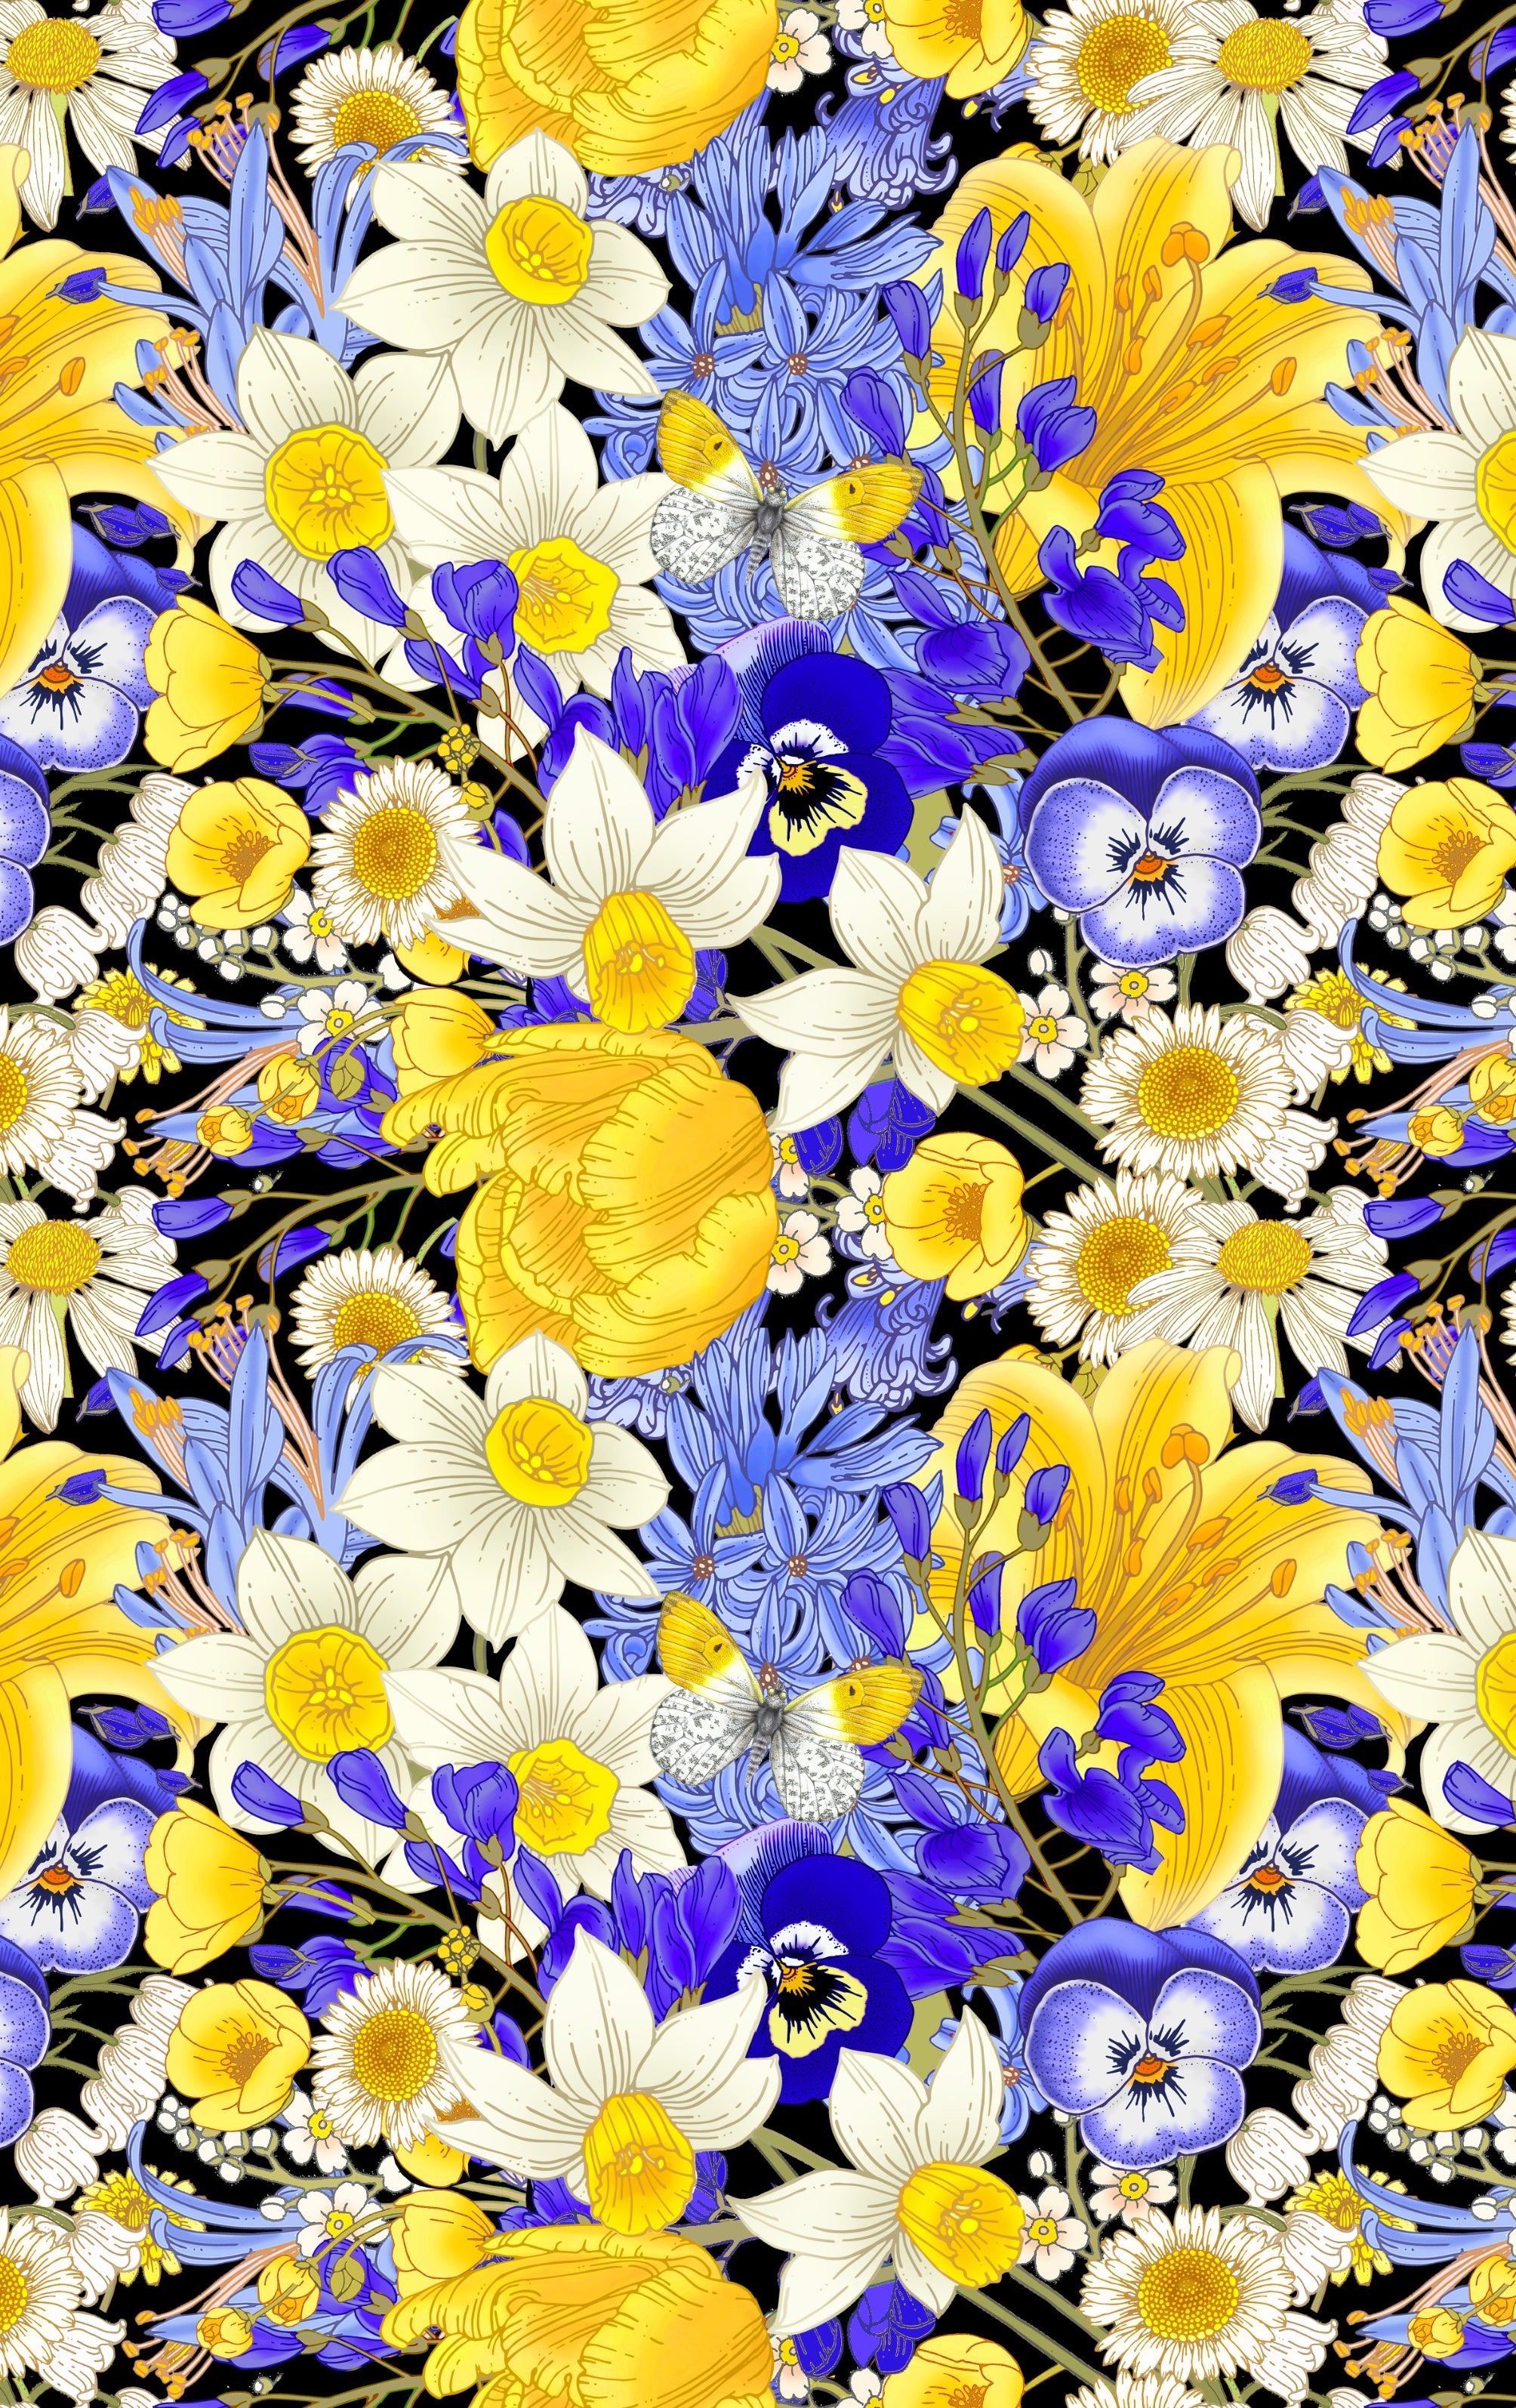 Daffodil & Daisy Print